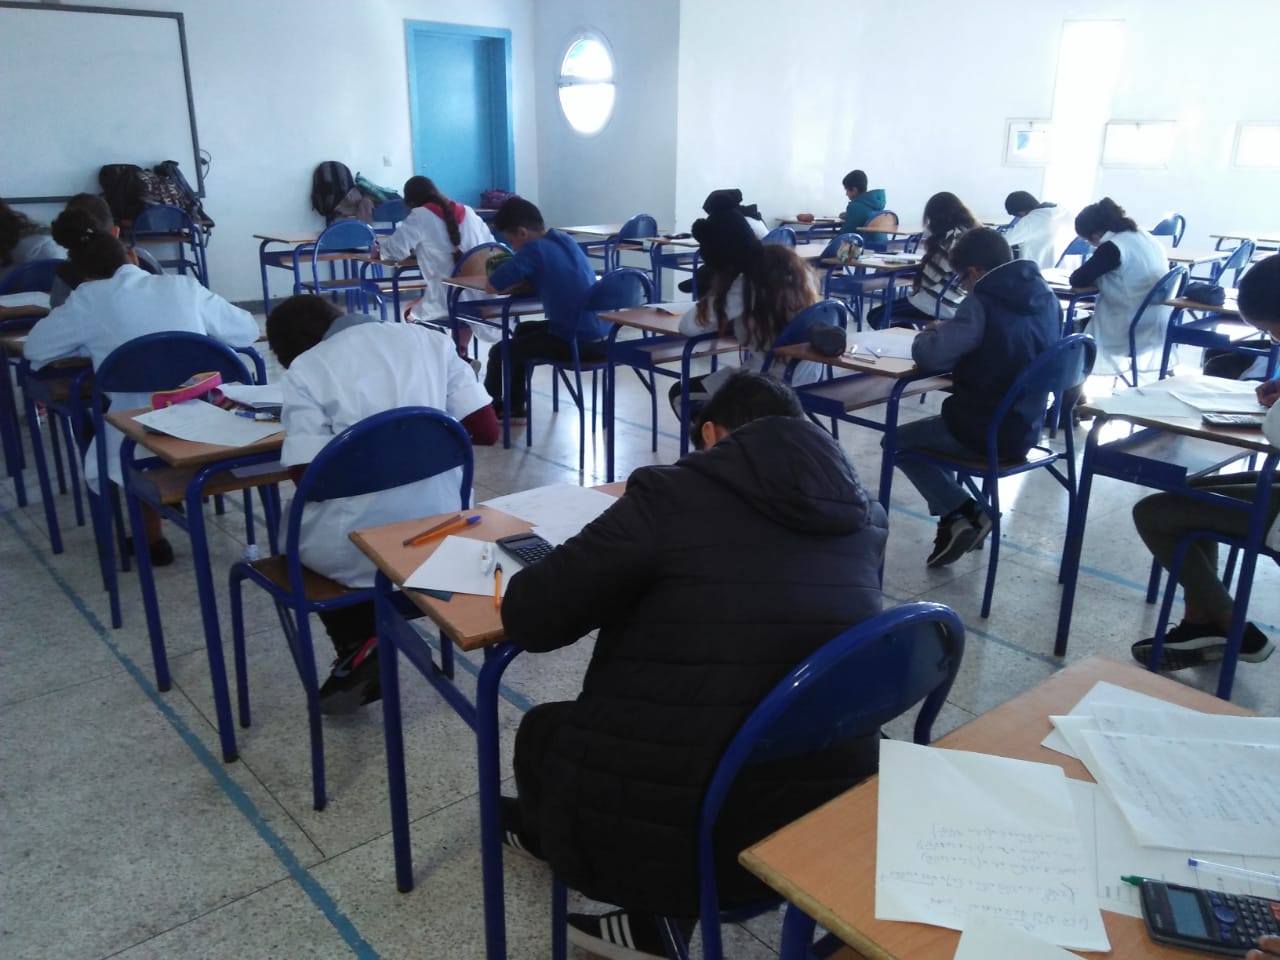 Groupe Scolaire HENRI MATISSE Maternelle- Primaire - collége - lycée Ain Sebaa EL Oulfa Casablanca